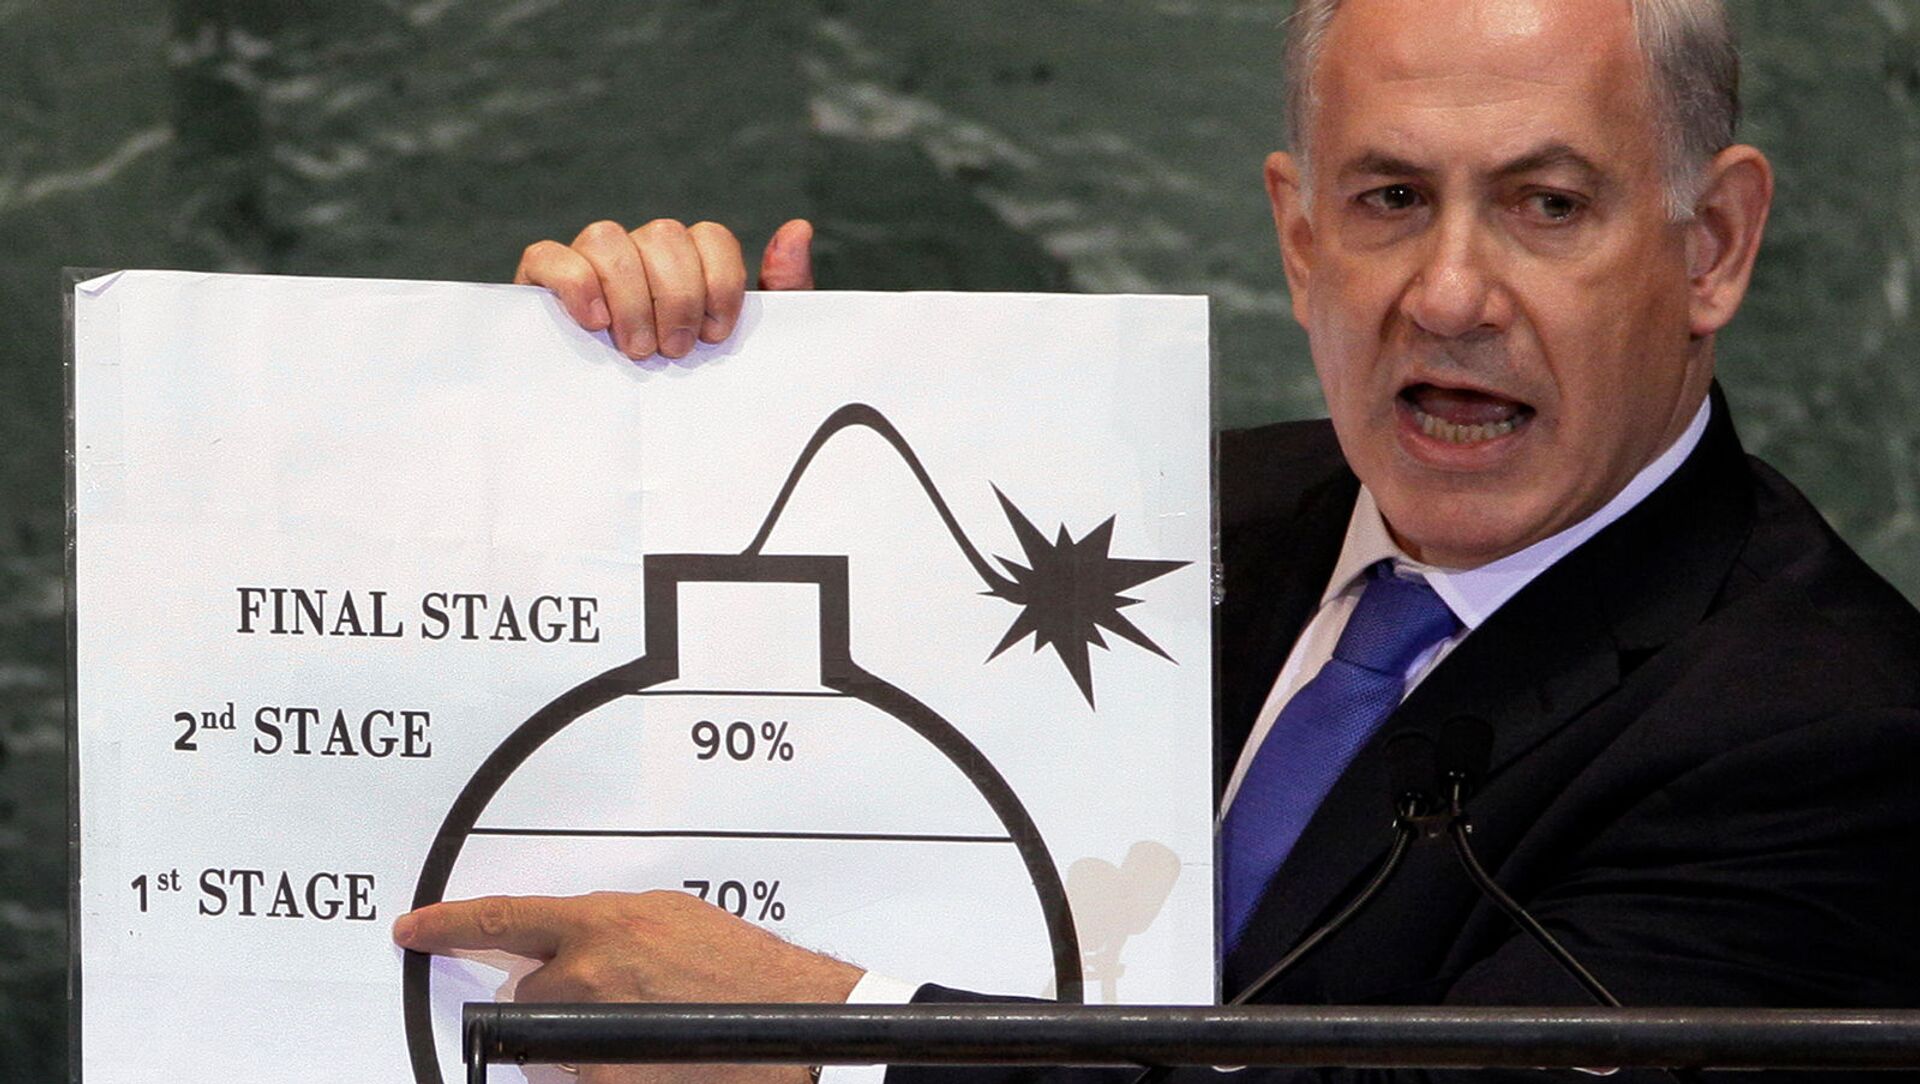 Премьер-министр Израиля Биньямин Нетаньяху демонстрирует свою озабоченность ядерными амбициями Ирана в своем выступлении на 67-й сессии Генеральной Ассамблеи ООН (27 сентября 2012). Нью-Йорк - Sputnik Армения, 1920, 19.05.2021